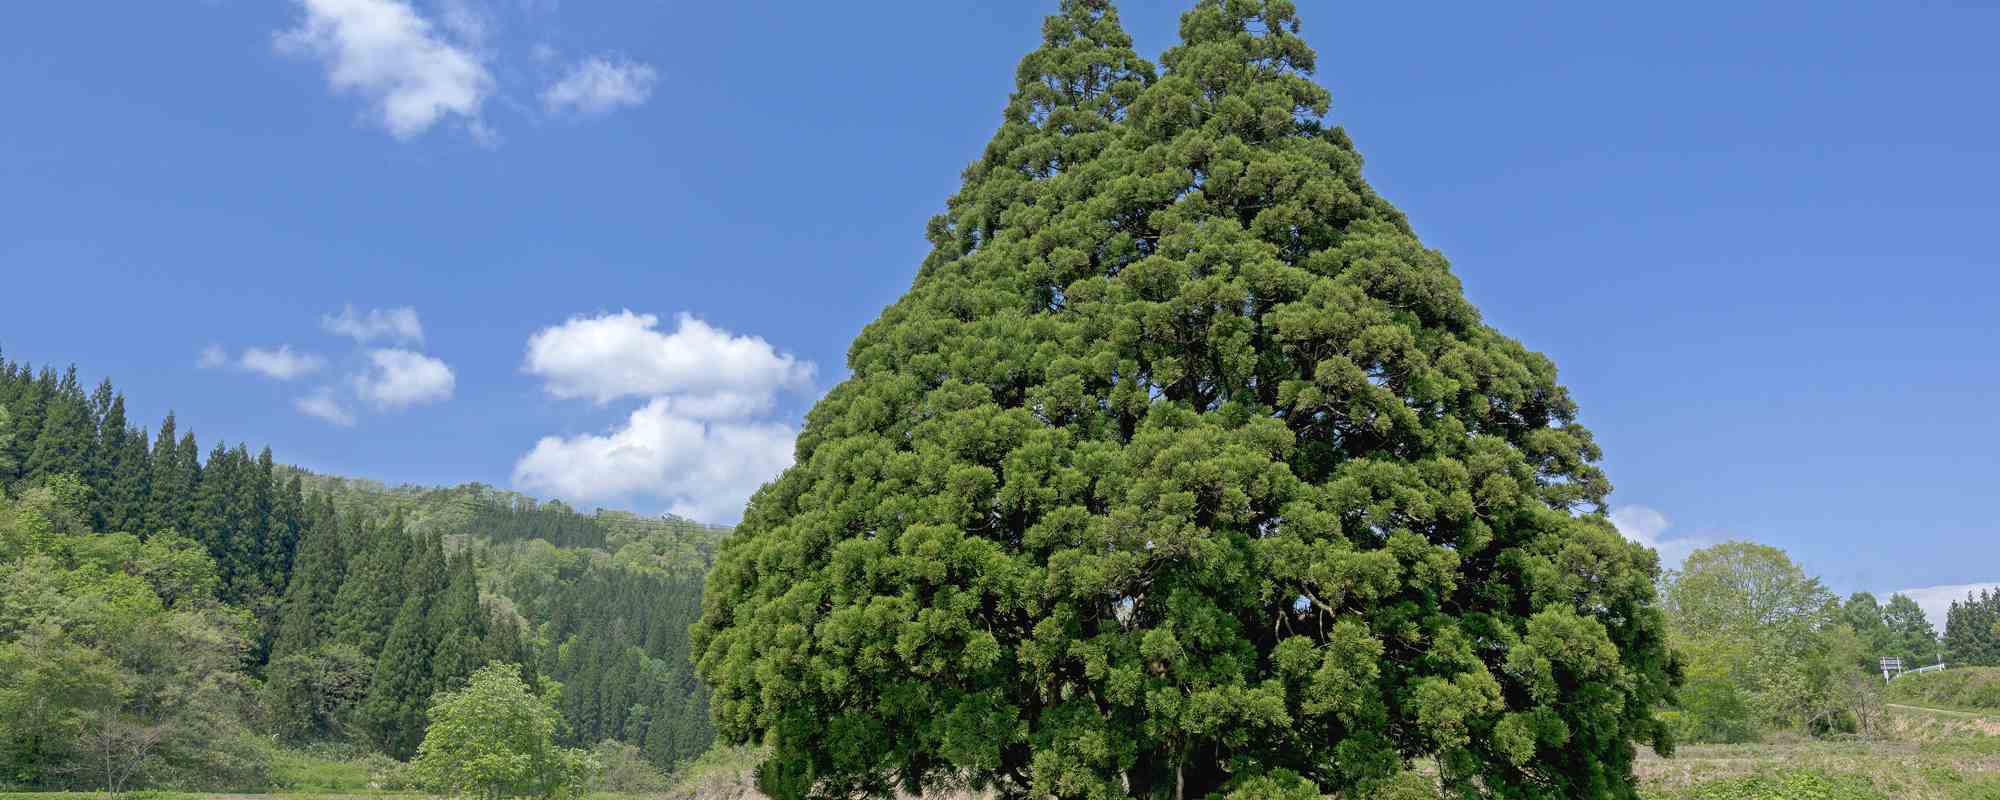 小杉の大杉・トトロの木